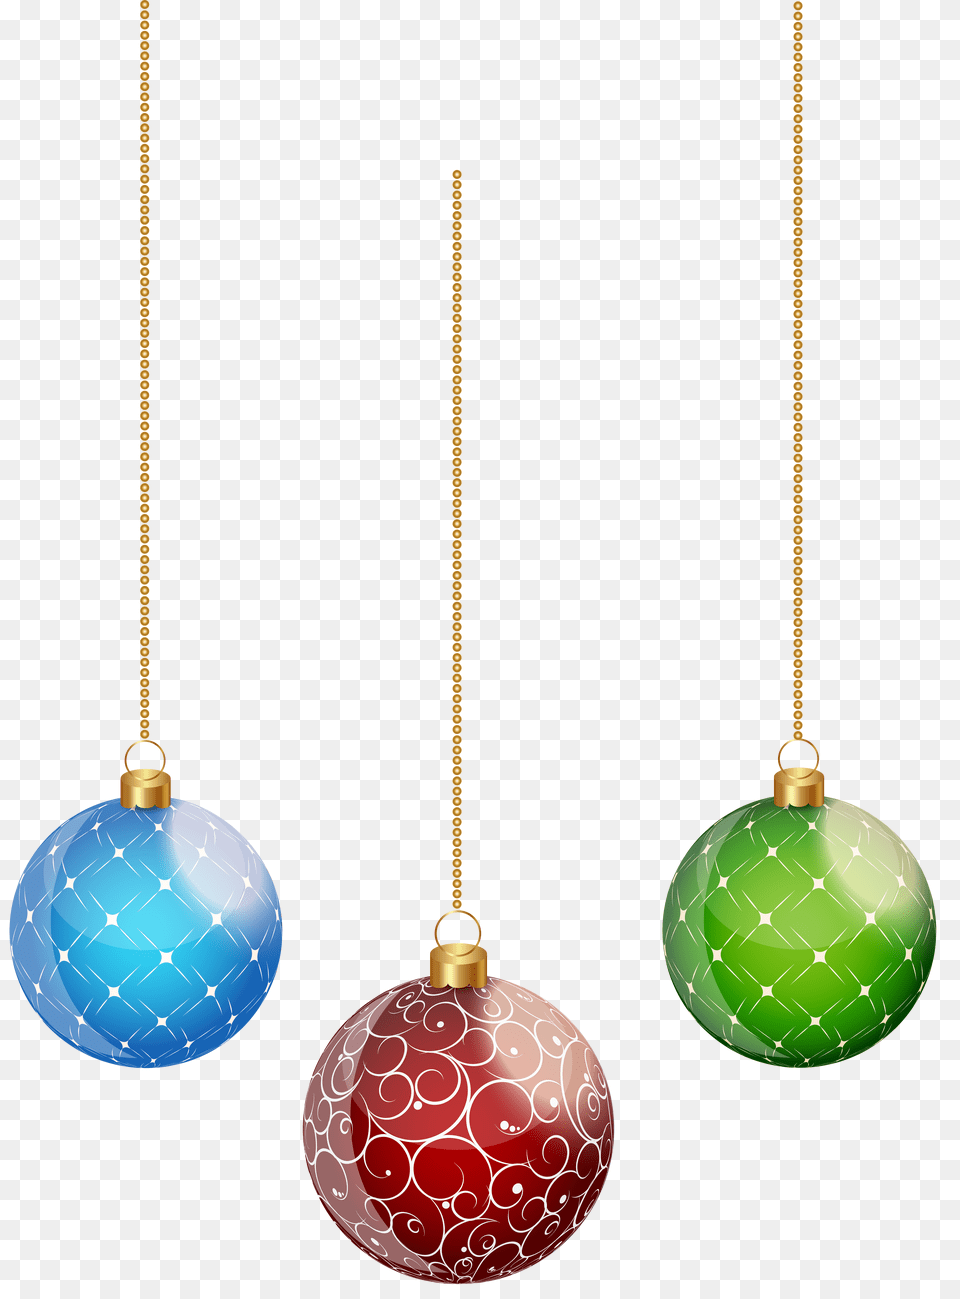 Hanging Christmas Ornaments Hanging Christmas Balls Hanging Christmas Balls Free Png Download